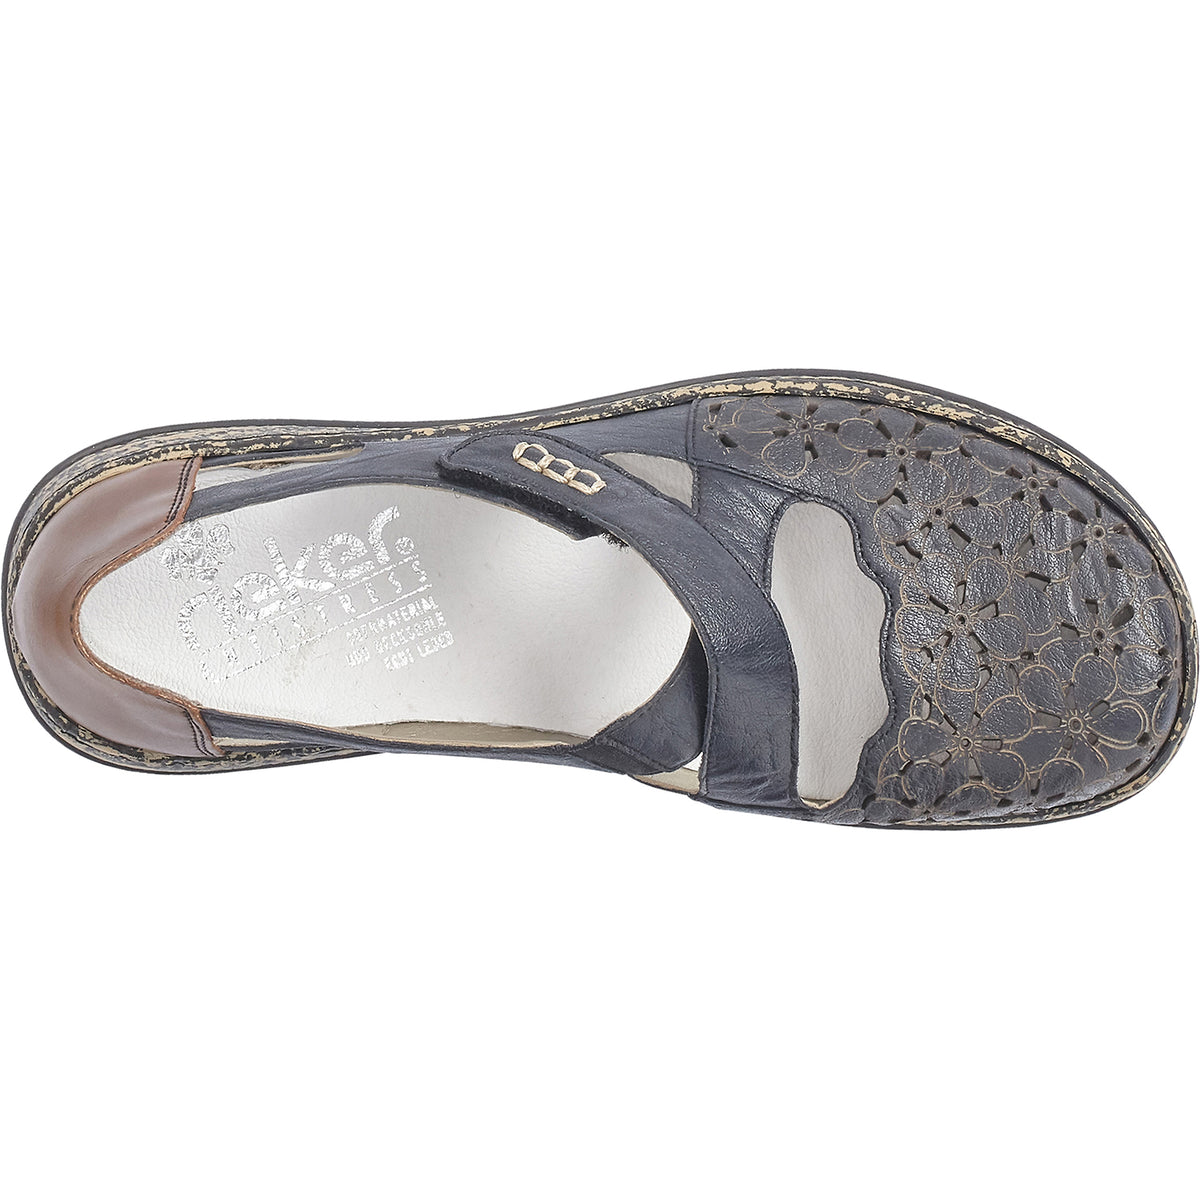 Rieker 463H4-14 | Women's Slip-On Shoes | Footwear etc.